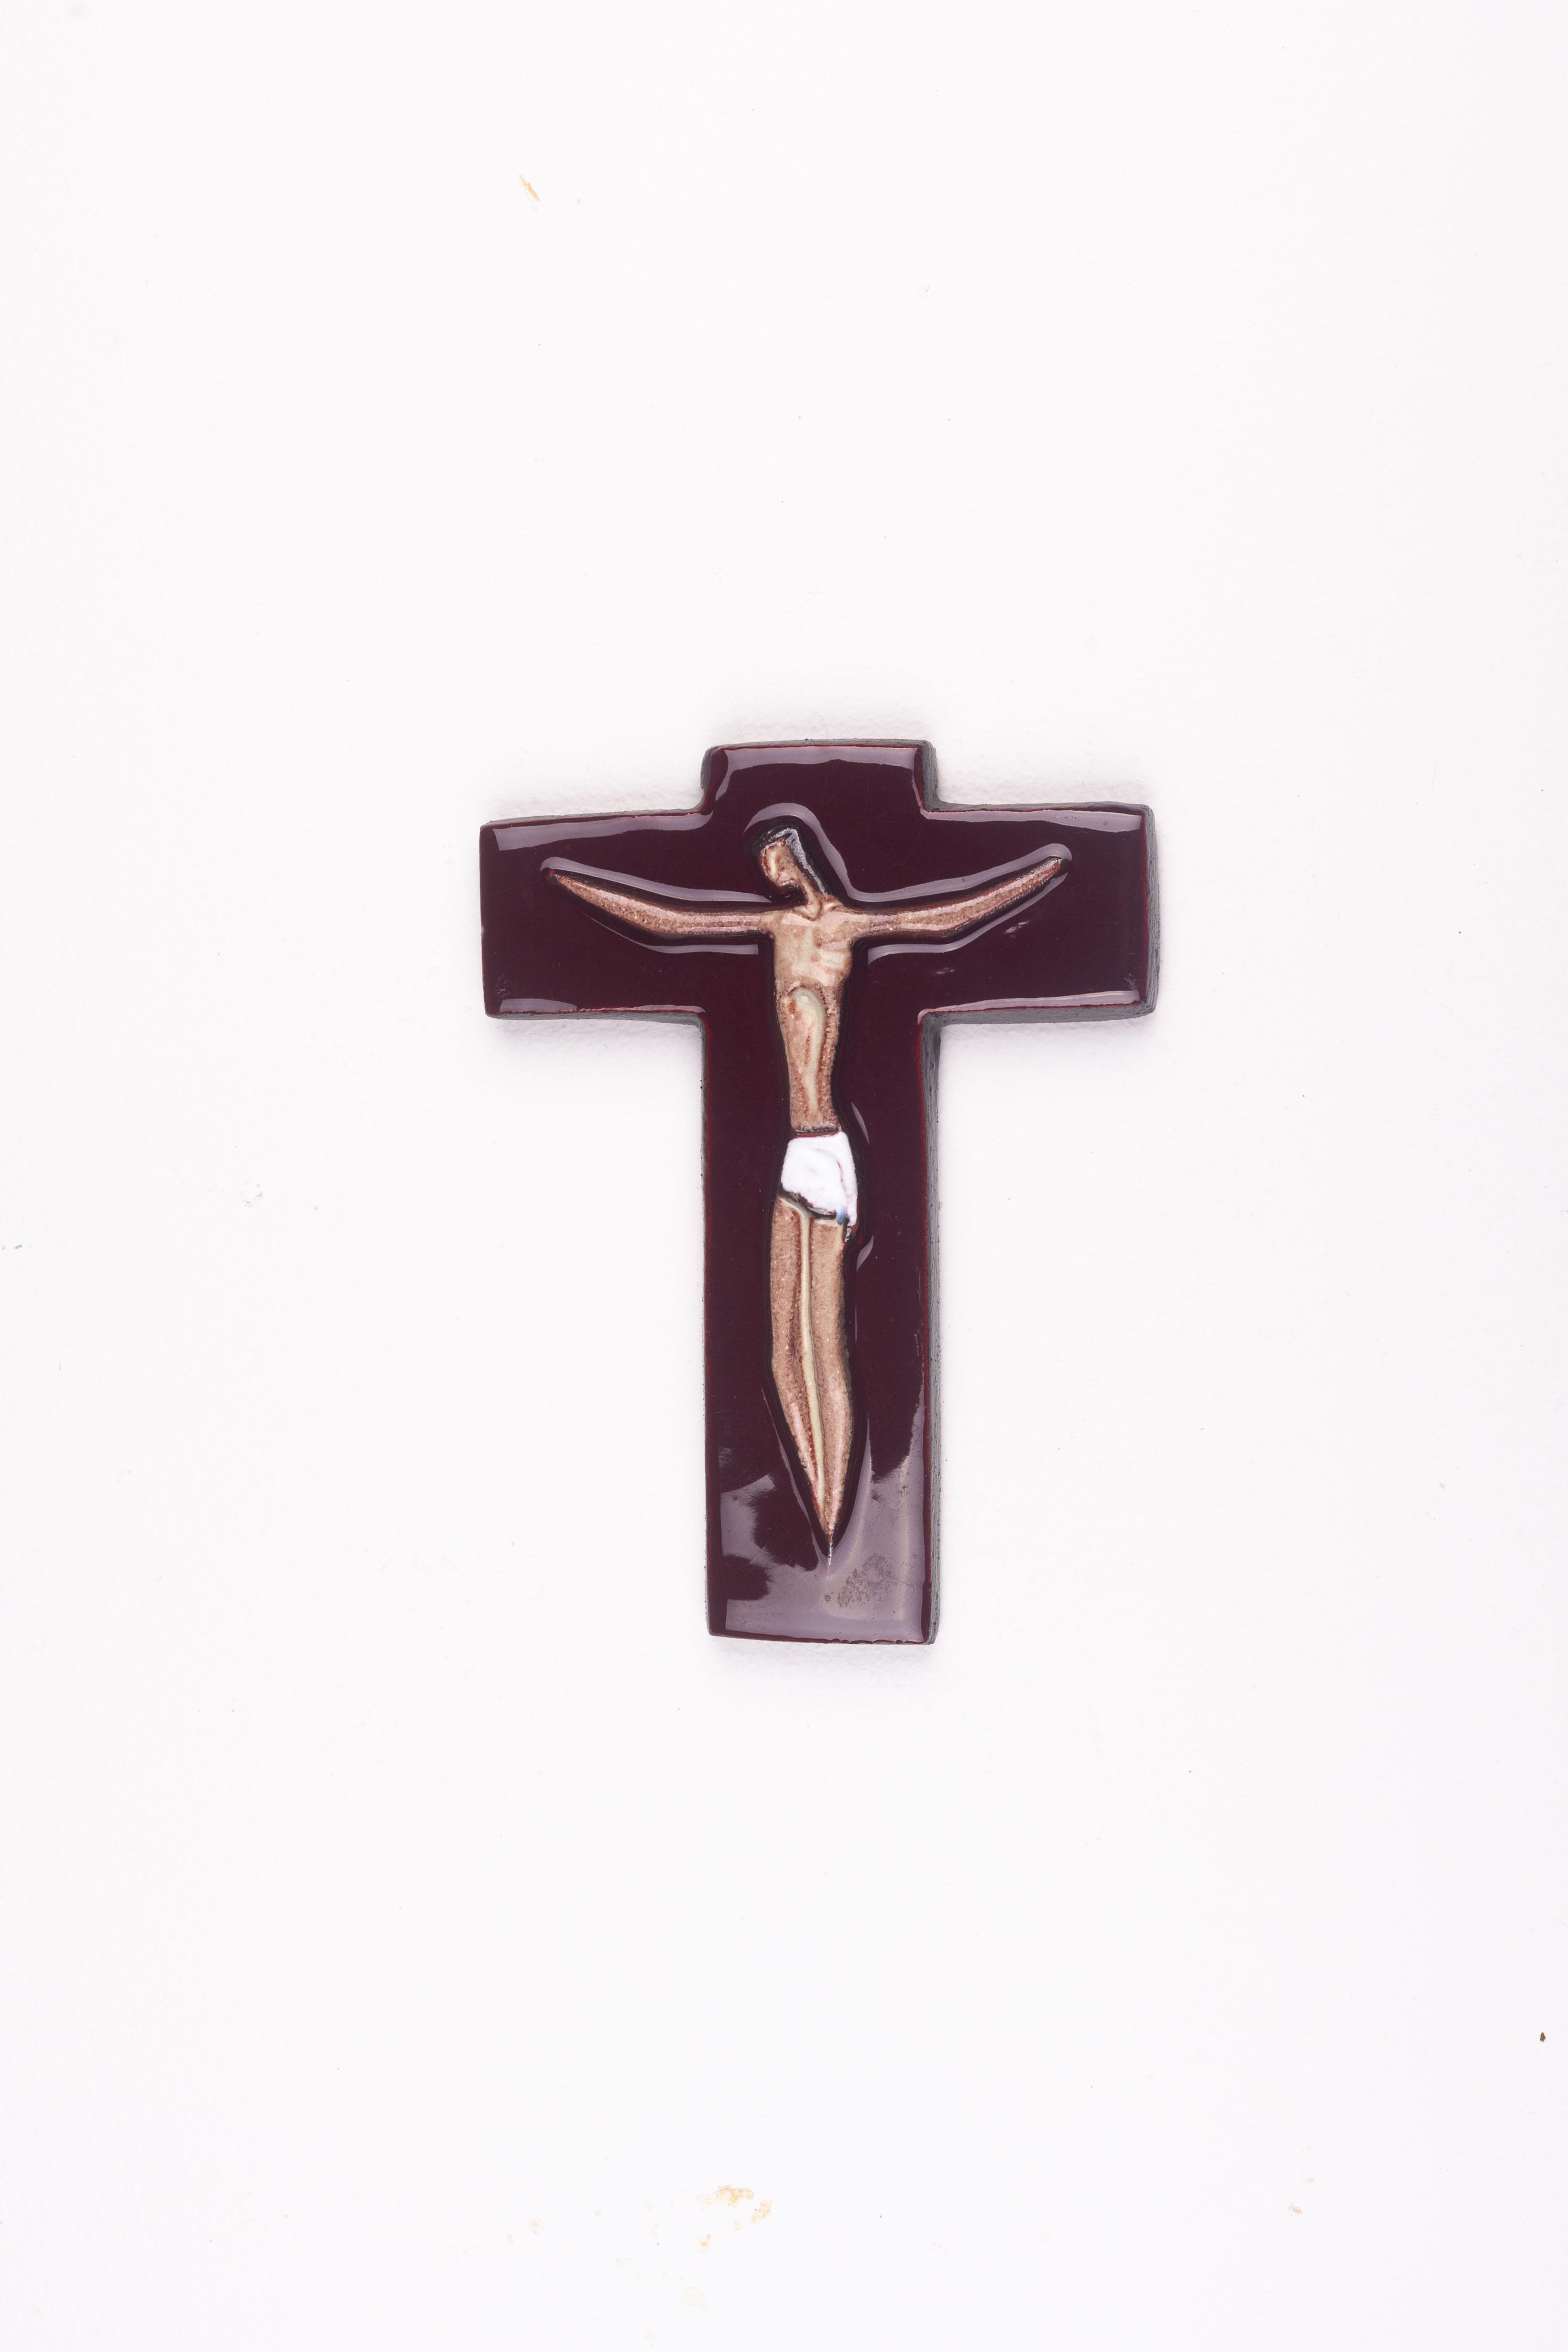 Dieses von flämischen Kunsthandwerkern gefertigte religiöse Kreuz aus der Mitte des Jahrhunderts hat eine burgunderfarbene, glänzende Glasur und eine sehnige Christusfigur in der Mitte. Das Zusammenspiel dieser fließenden Linien mit der glänzenden